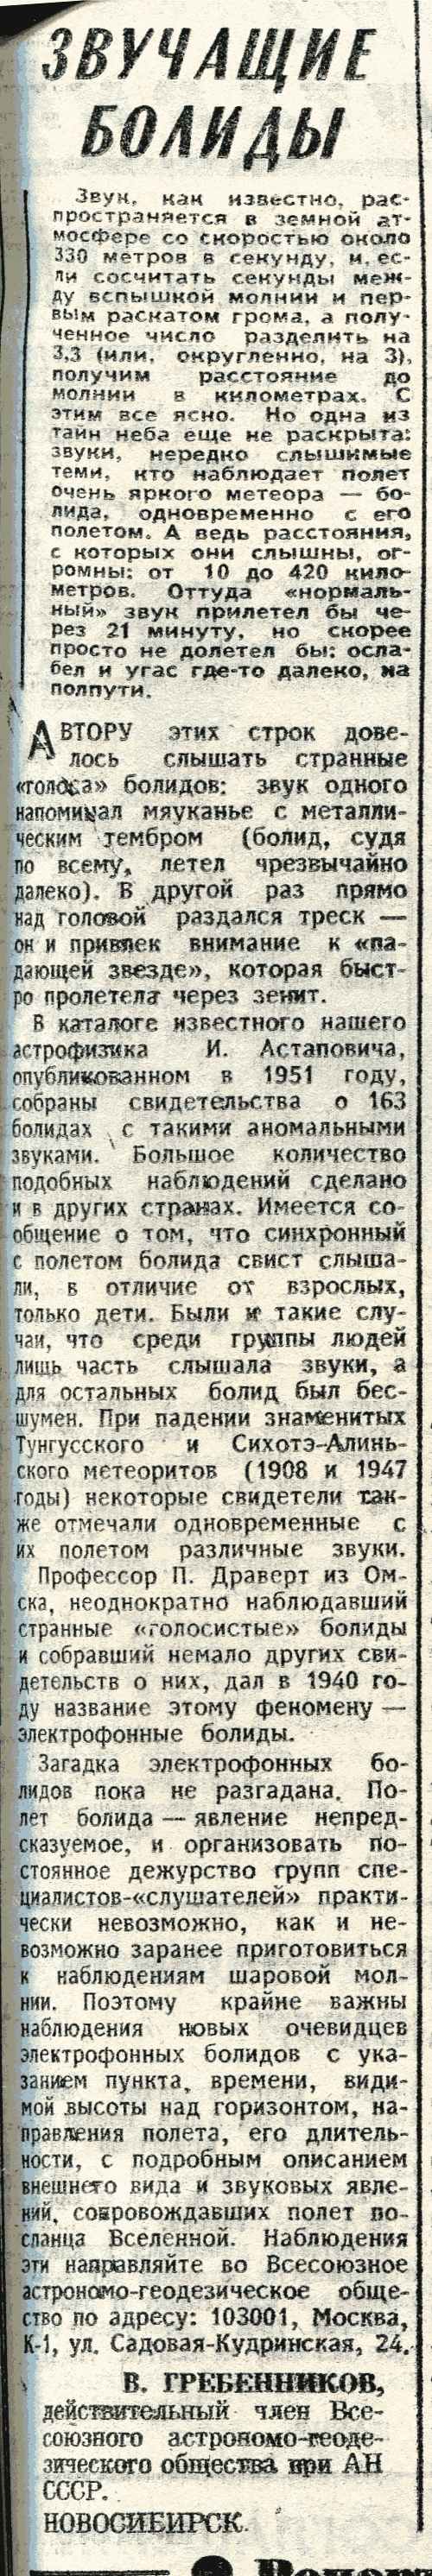 Звучащие болиды. В.С. Гребенников. Известия, 28.04.1982.